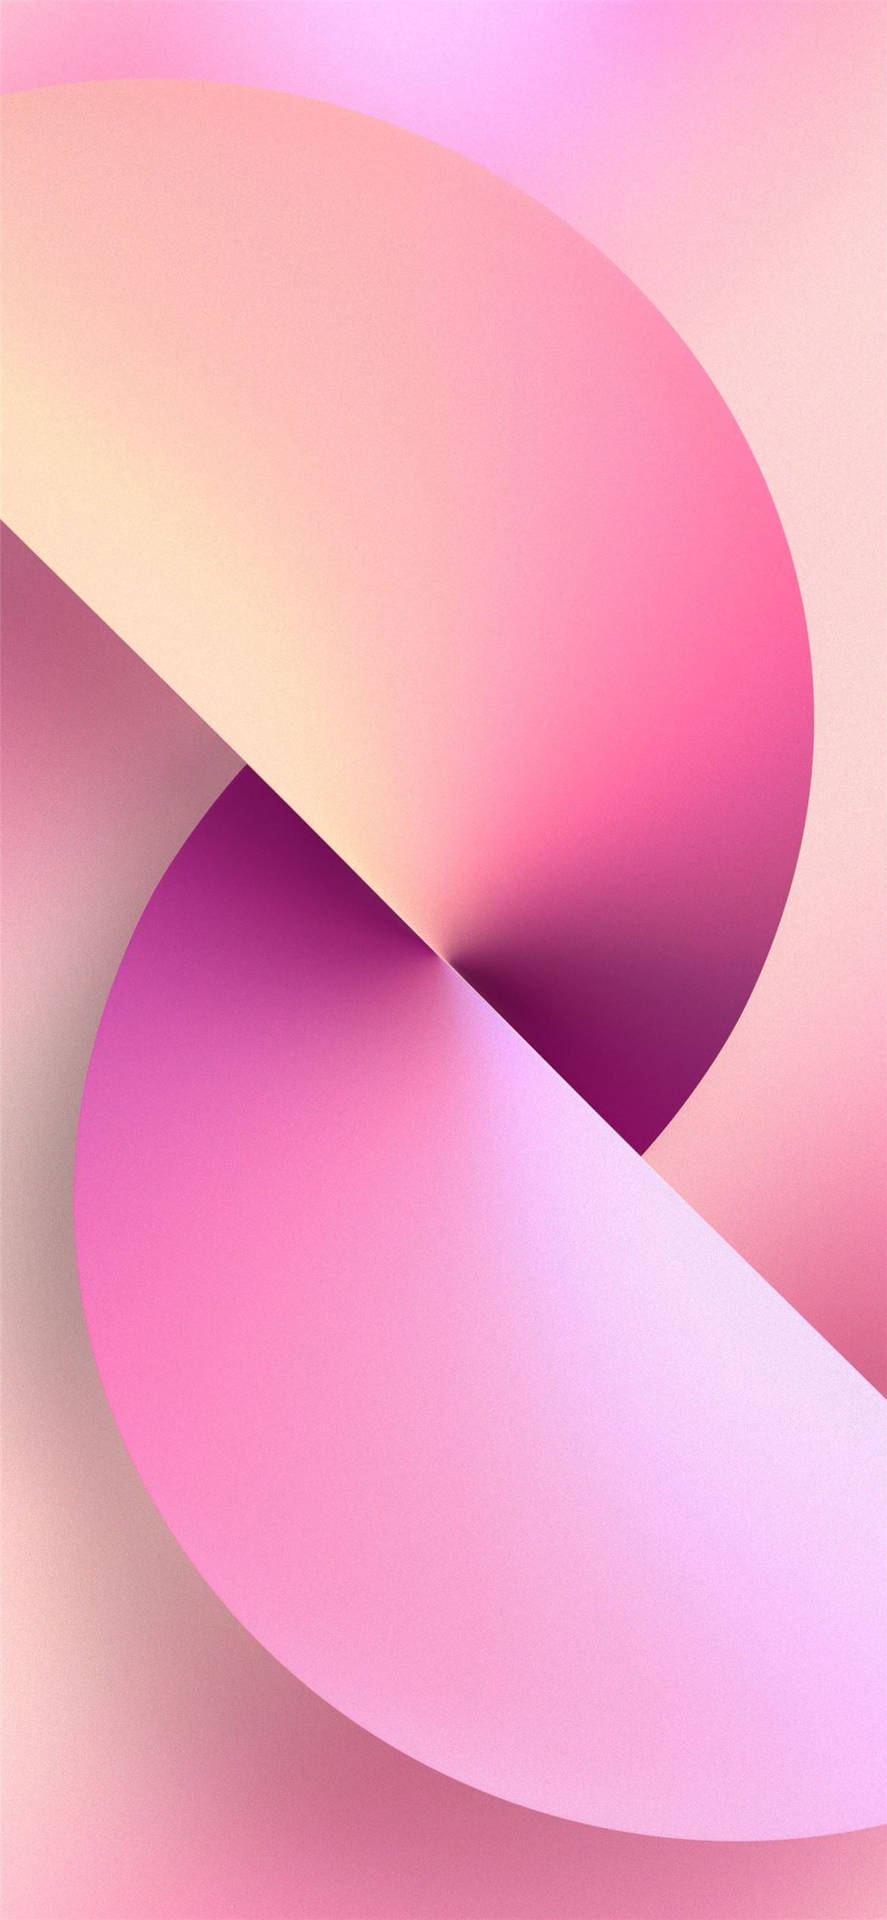 Bereitensie Sich Auf Ein Reibungsloses, Farbenfrohes Erlebnis Vor - Vom Pinkfarbenen Iphone Xr. Wallpaper